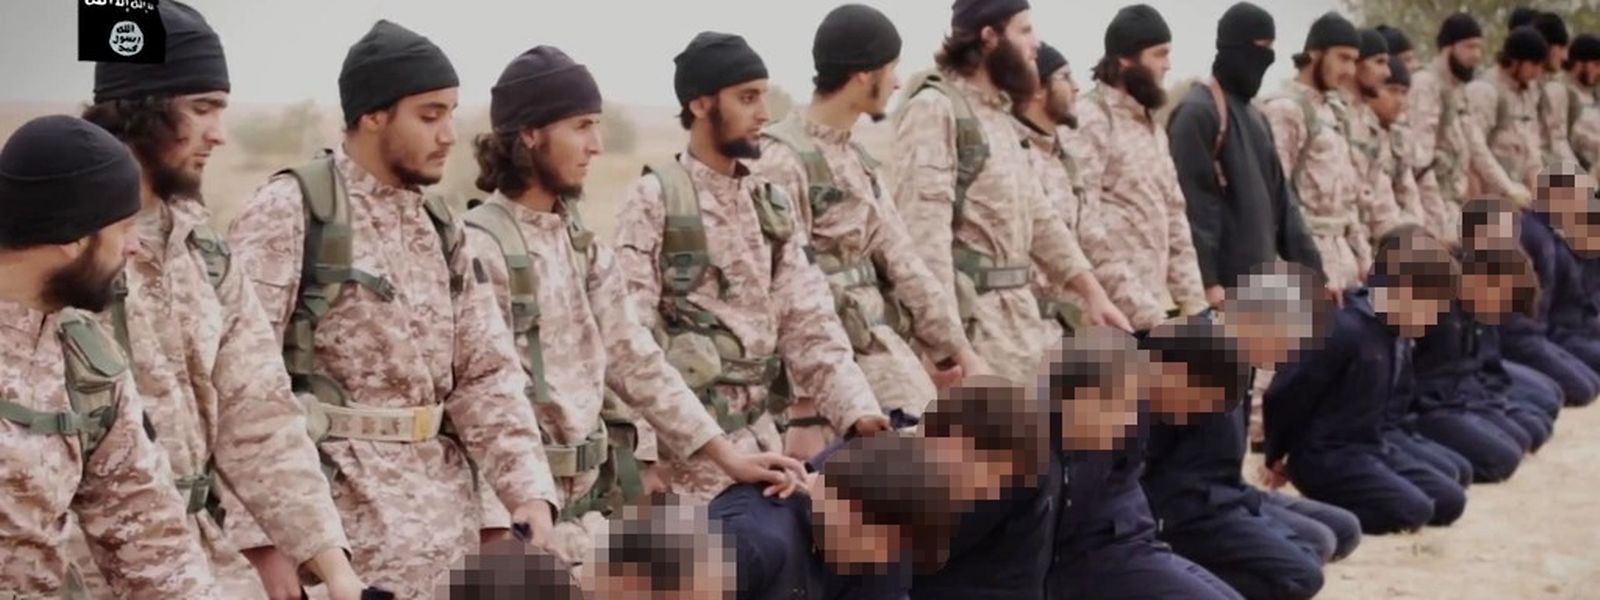 Une image issue d'une vidéo de propagande de l'Etat Islamique montrant un groupe de djihadistes se préparant à éxécuter simultanément 15 prisonniers syriens